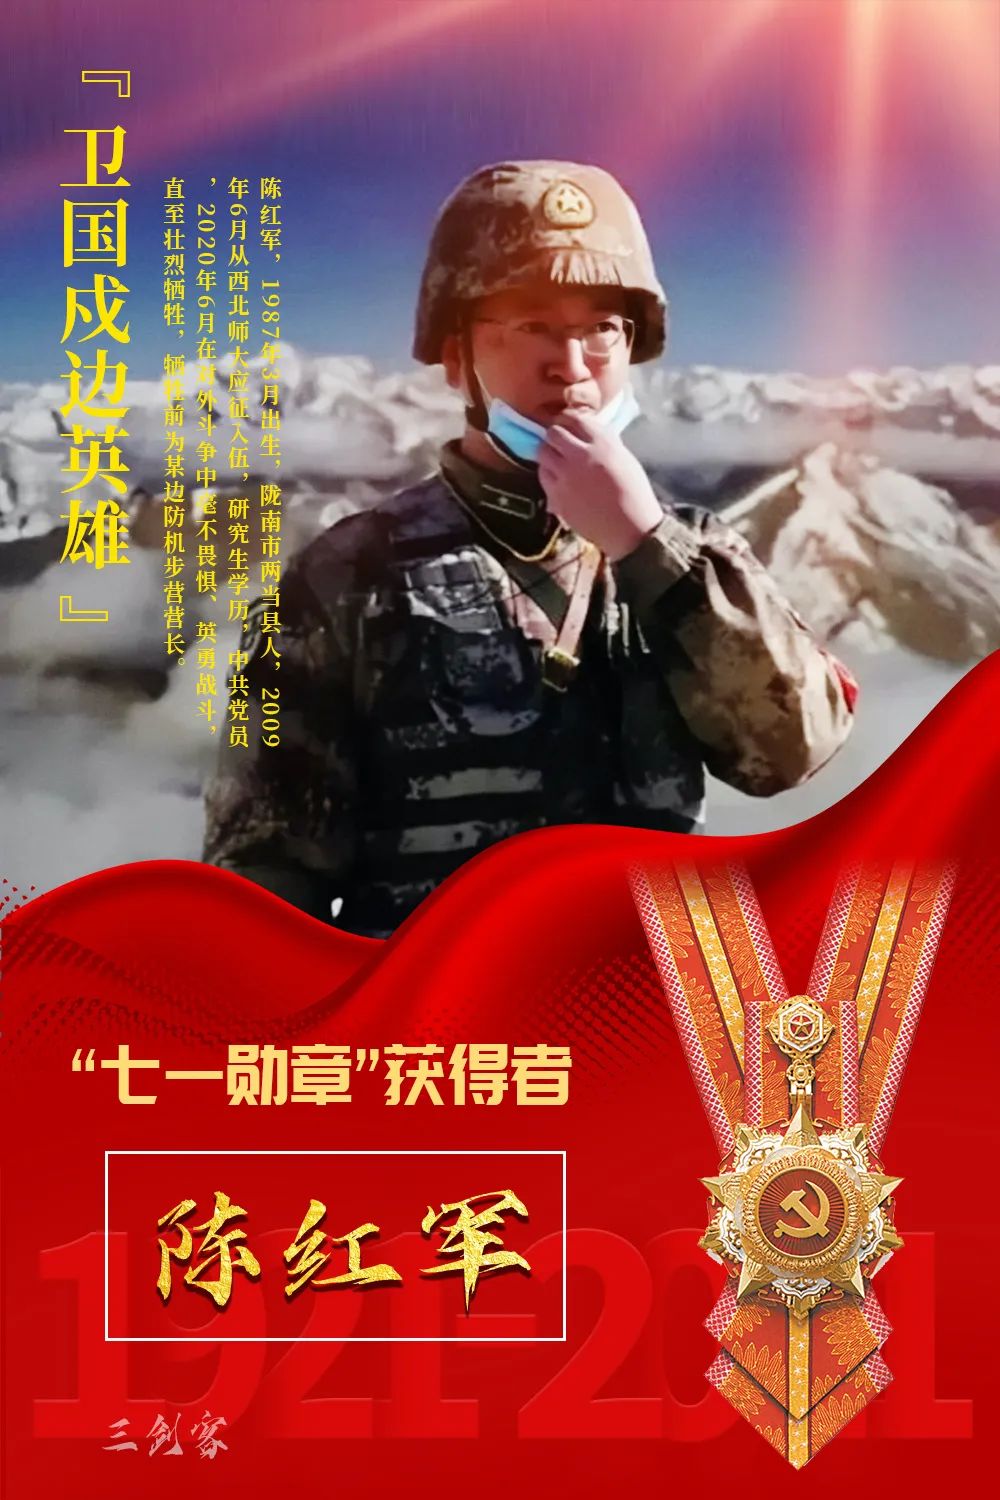 在人生的最后时刻,陈红军留下了这样一张照片:英勇战斗!